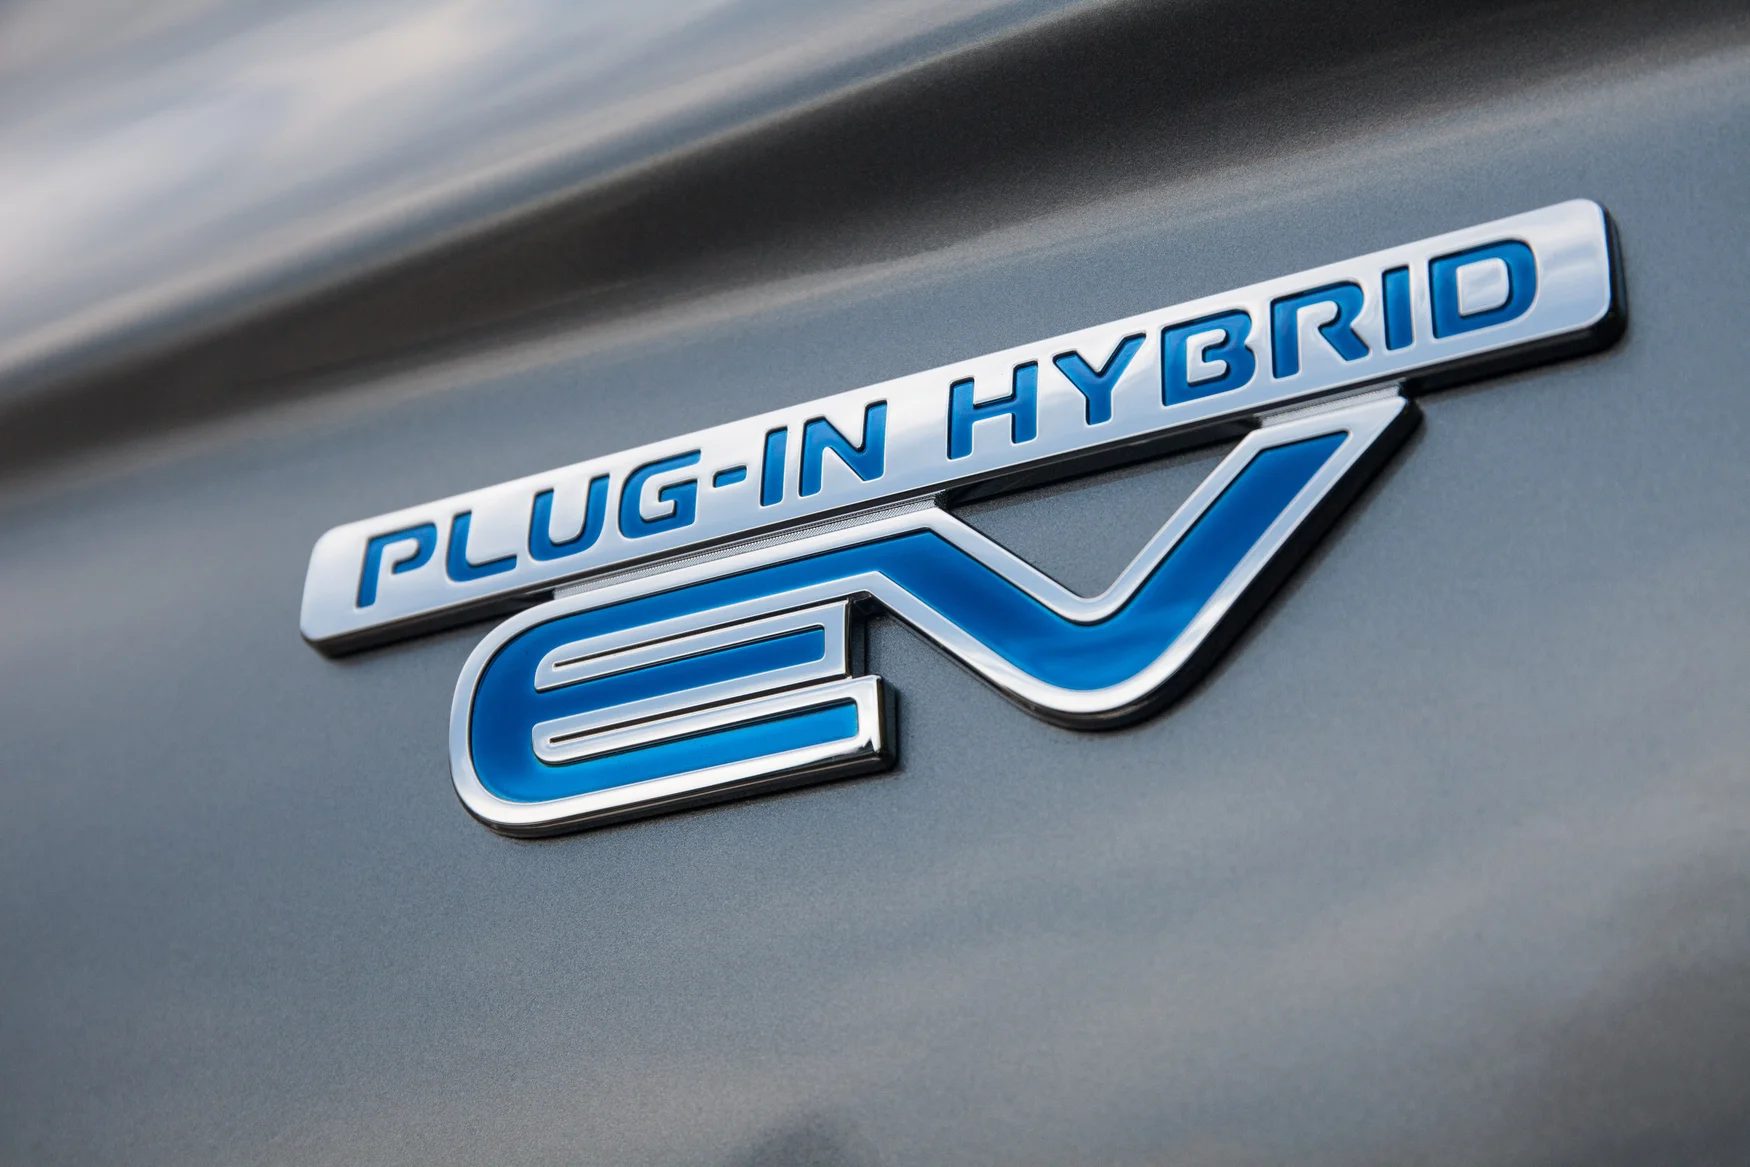 Plug-in хибридите веќе не се пожелни: Германија ги укинува субвенциите за еколошки возила